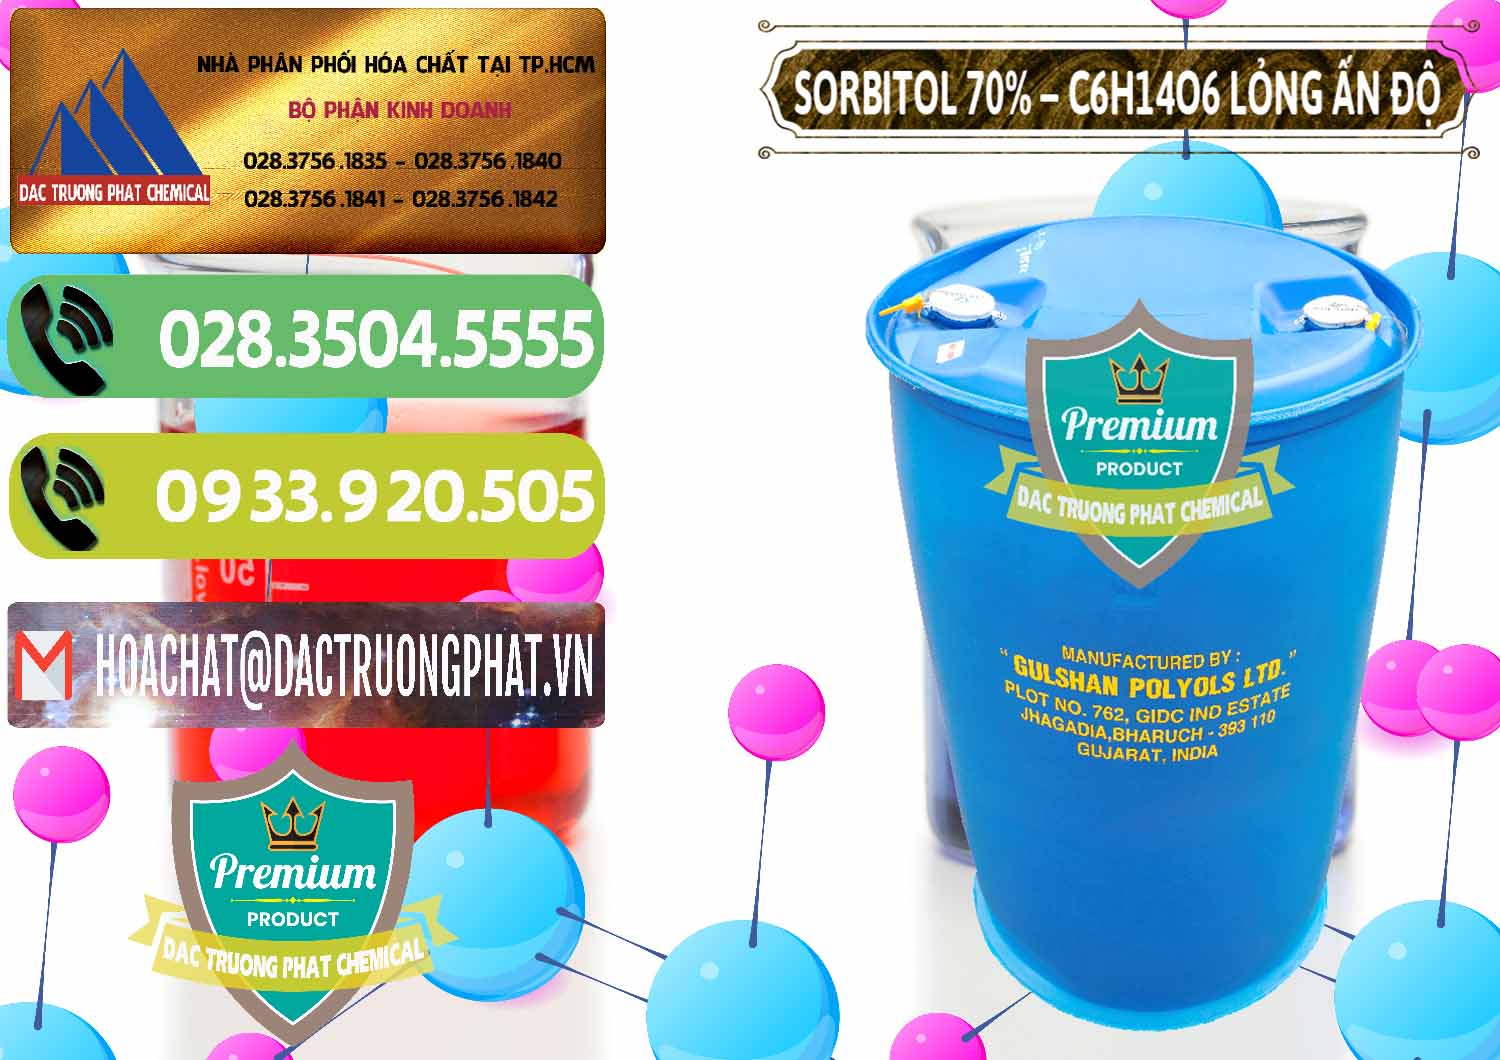 Nơi nhập khẩu ( bán ) Sorbitol - C6H14O6 Lỏng 70% Food Grade Ấn Độ India - 0152 - Công ty chuyên nhập khẩu và phân phối hóa chất tại TP.HCM - hoachatmientay.vn